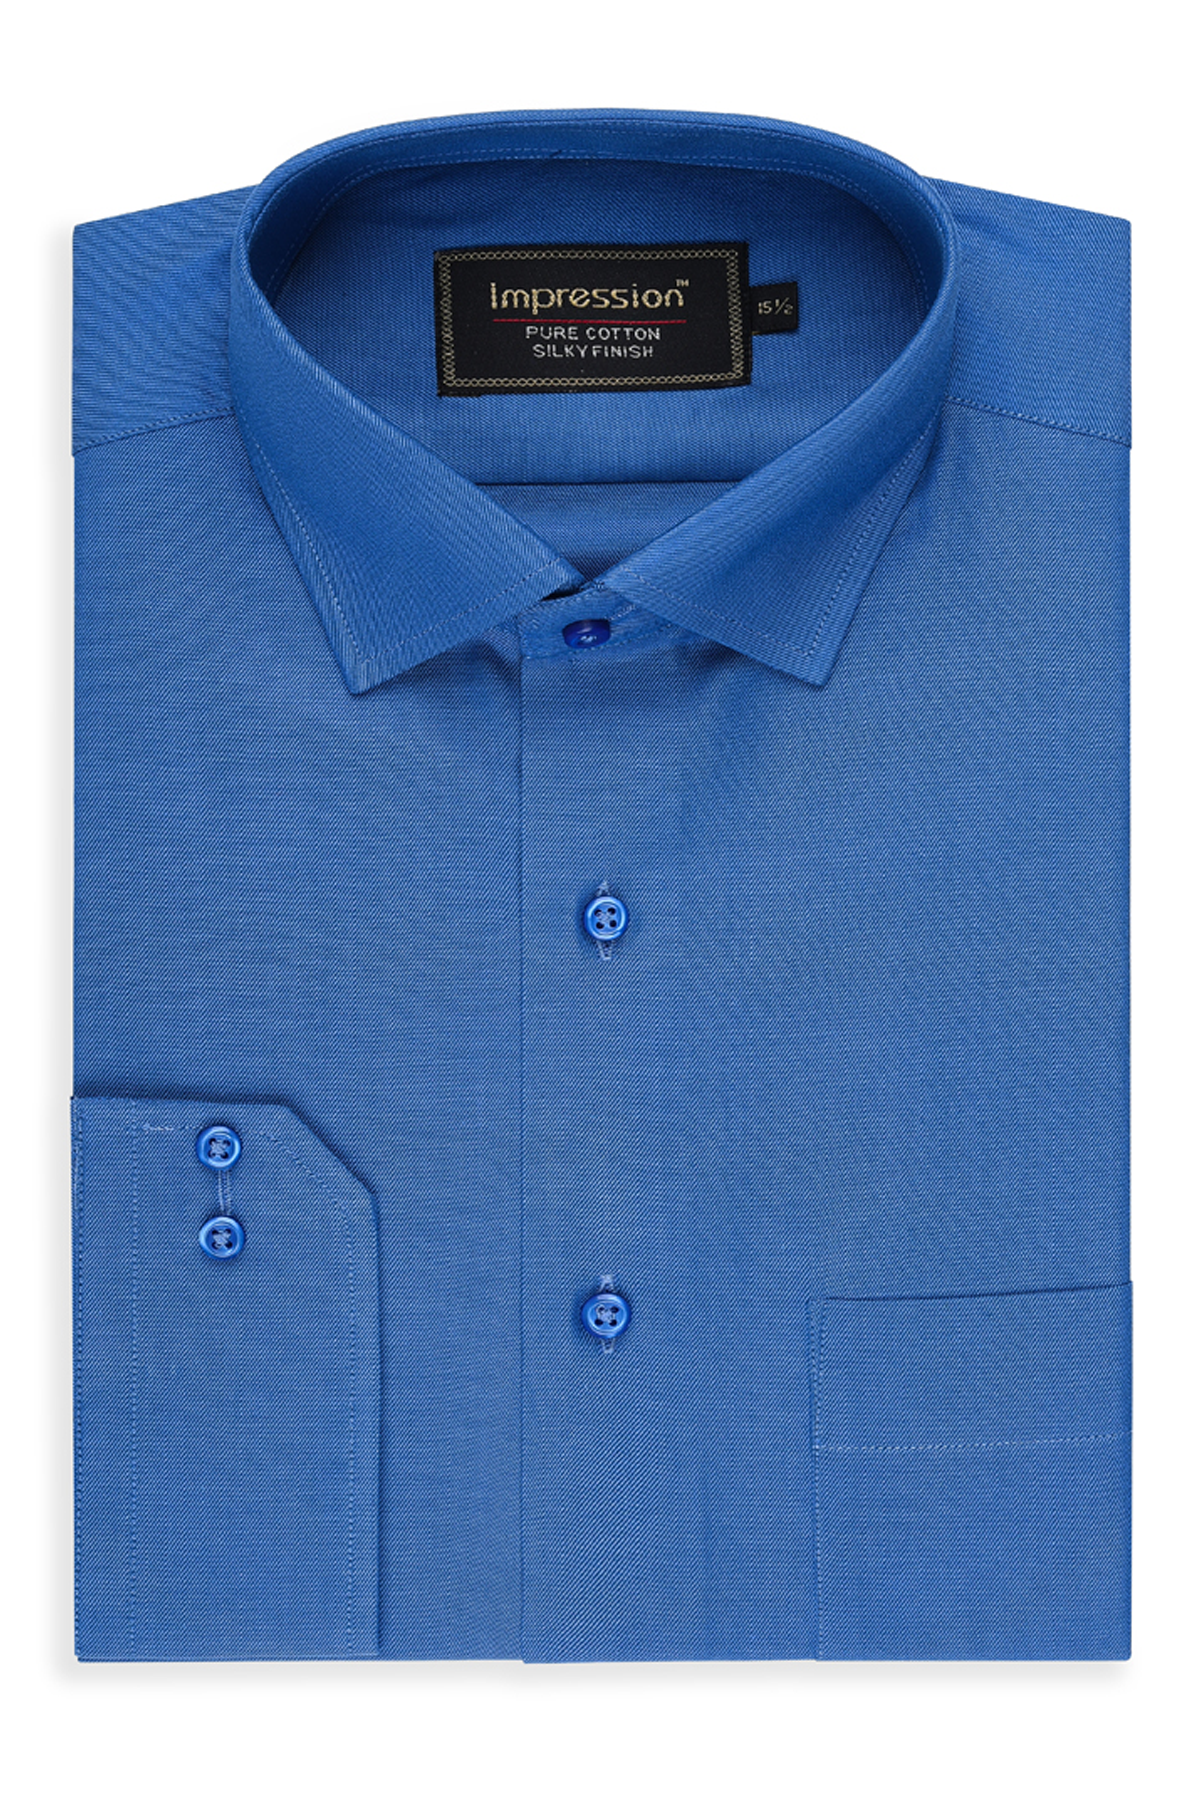 Royal Blue Plain Dress Shirt ( Silky Finish)